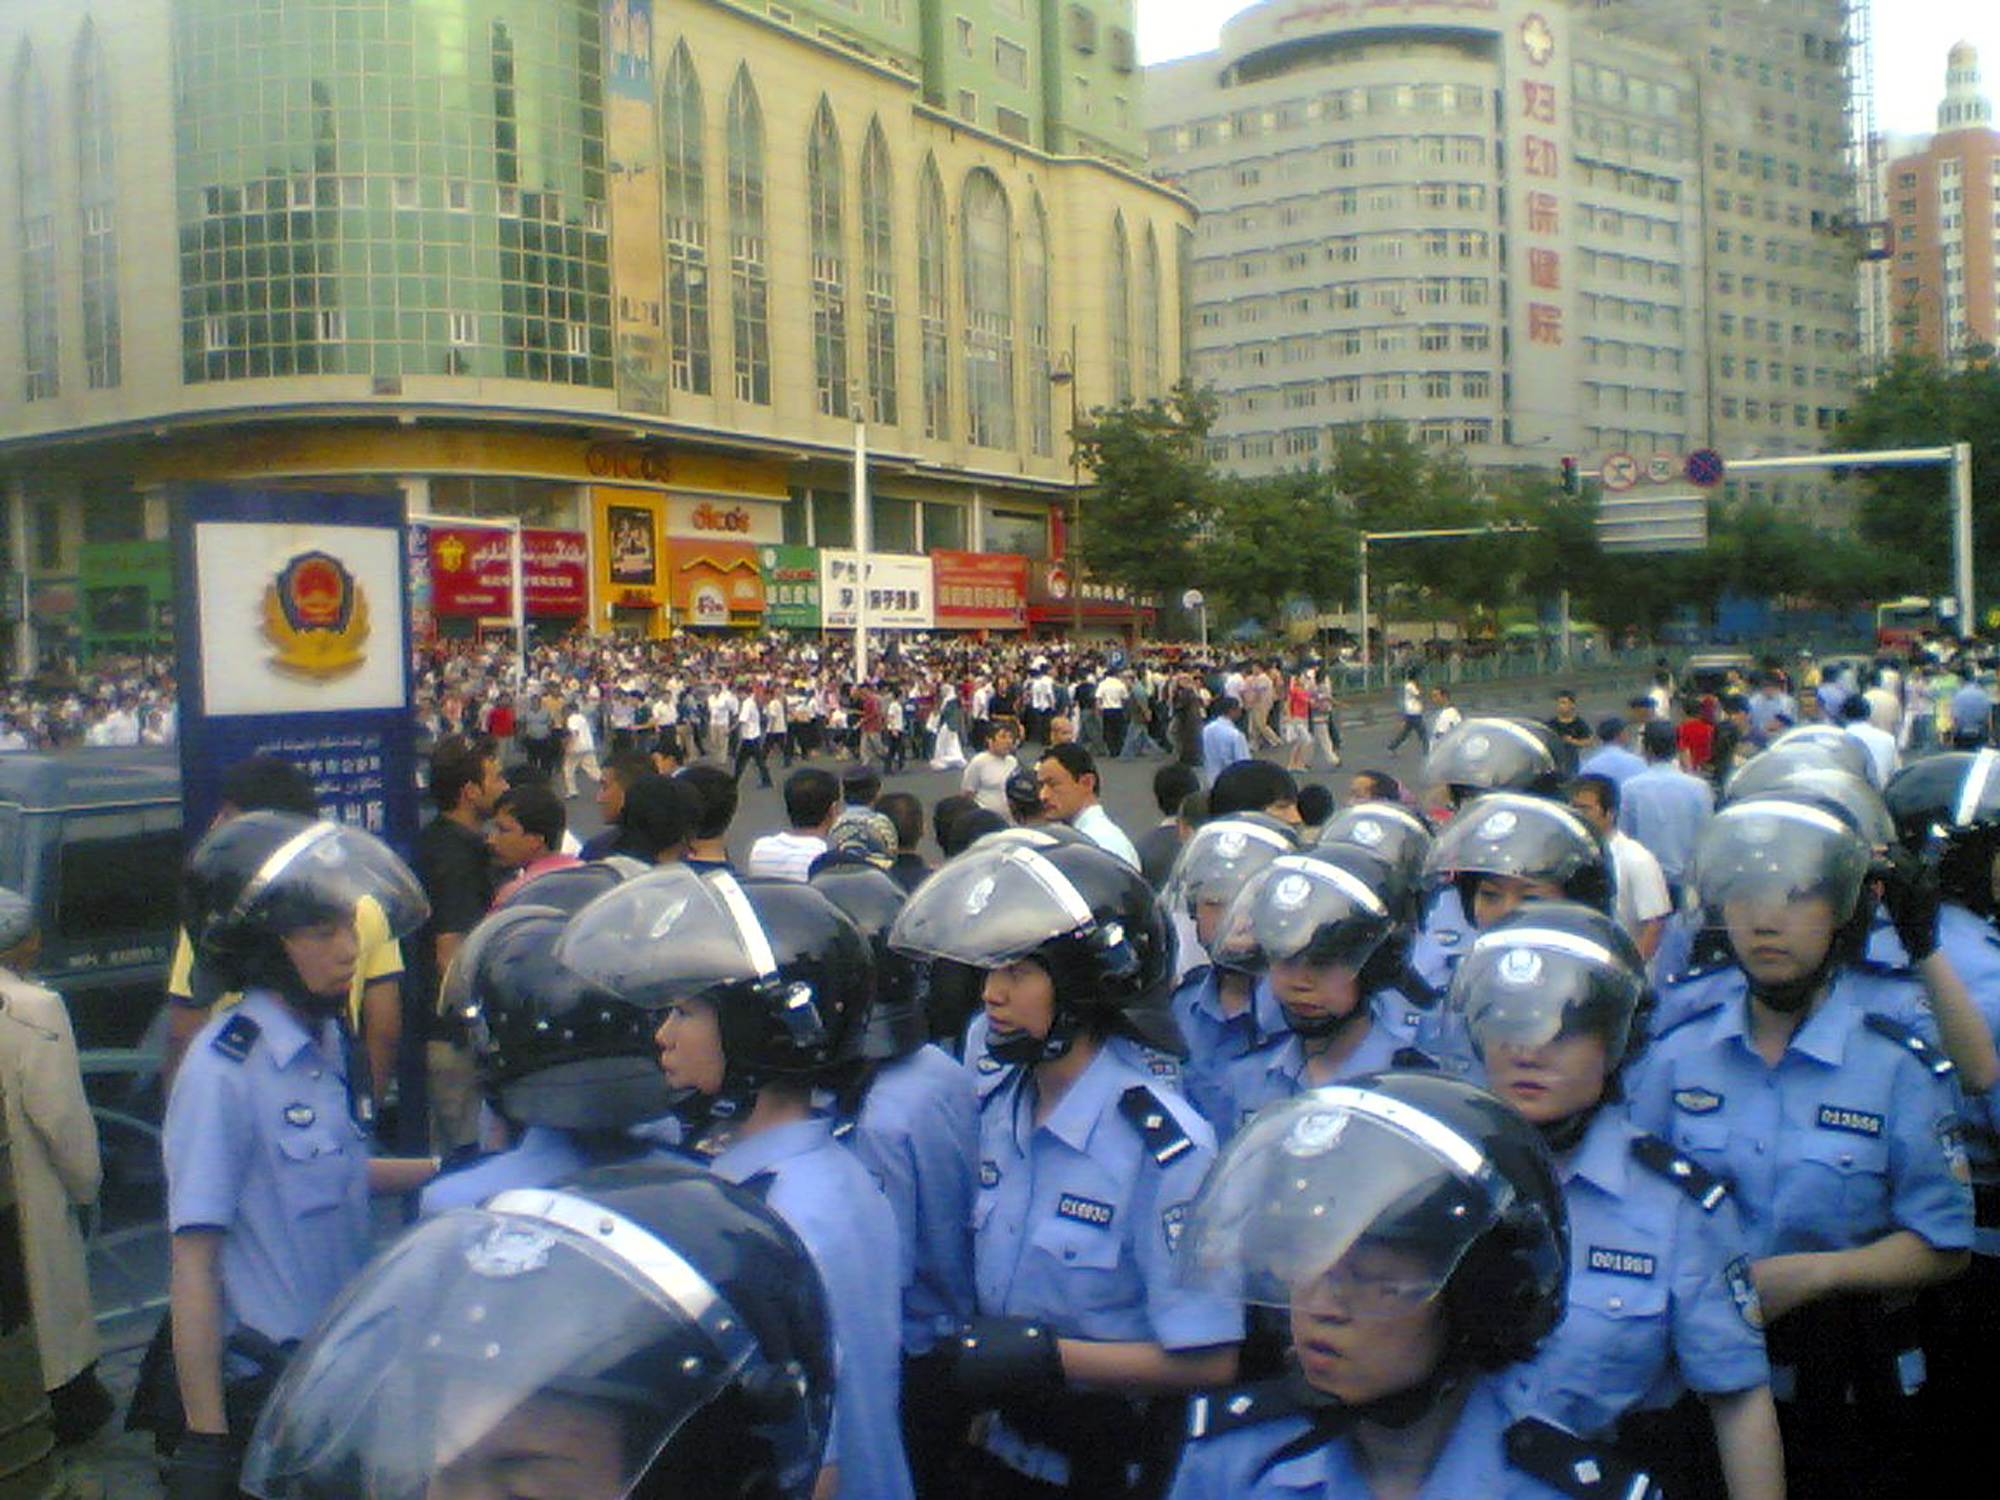 Chinesische Polizei schießt in Xinjiang auf uigurische Demonstranten